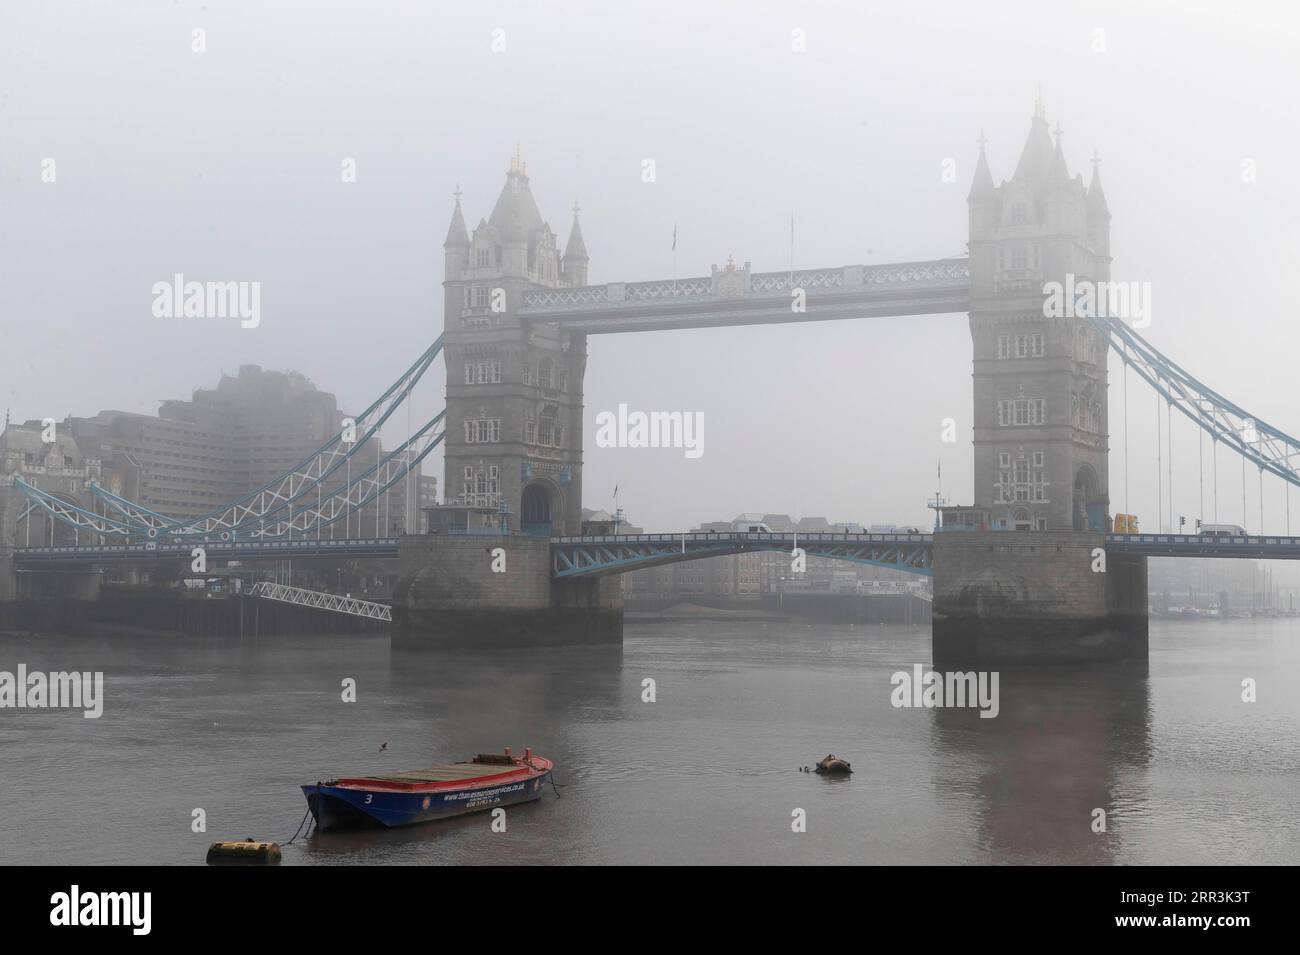 201105 -- LONDON, 5. November 2020 -- Foto aufgenommen am 5. November 2020 zeigt die von Nebel umhüllte Tower Bridge in London, Großbritannien. Die britischen Gesetzgeber stimmten am Mittwoch mit 516 gegen 38 Stimmen für die monatelange Sperre der Regierung für England, eine Mehrheit von 478 Stimmen. Das Abstimmungsergebnis ebnete den Weg für die neuen Maßnahmen, die der britische Premierminister Boris Johnson am Samstag angekündigt hatte, um die ansteigenden Coronavirus-Infektionen zu unterbinden. GROSSBRITANNIEN-LONDON-COVID-19-LOCKDOWN HanxYan PUBLICATIONxNOTxINxCHN Stockfoto